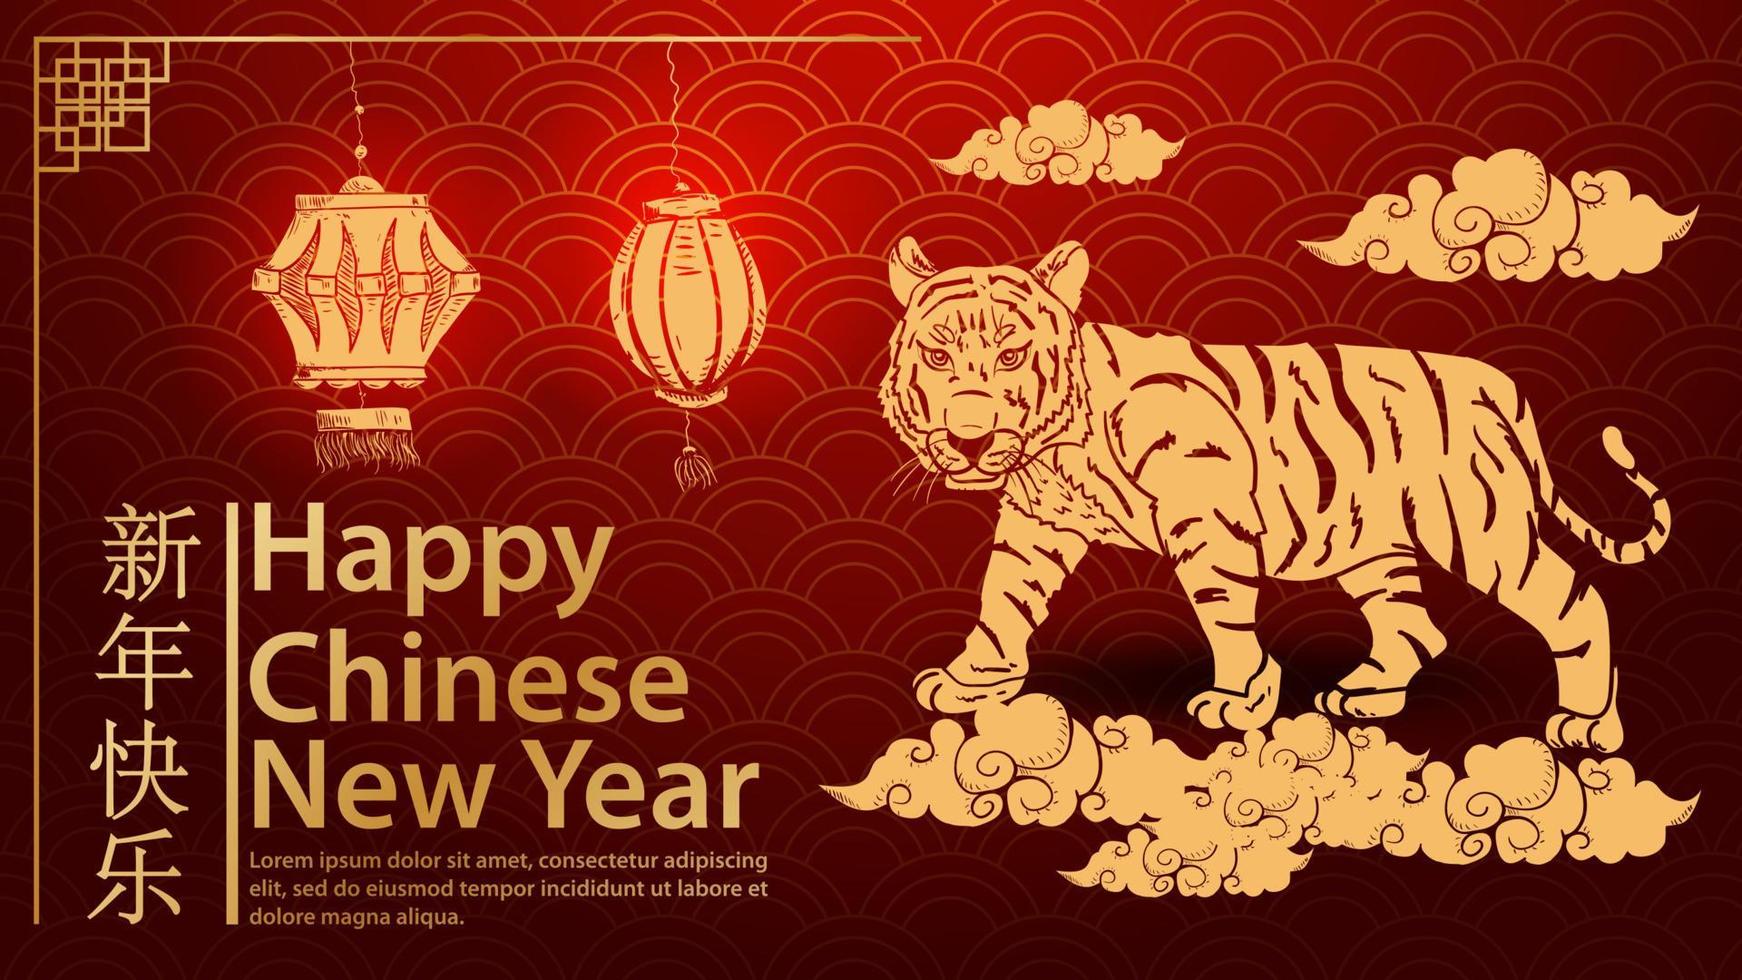 un pequeño tigre camina por las nubes el símbolo del año nuevo chino y la inscripción felicitaciones ola de fondo rojo vector